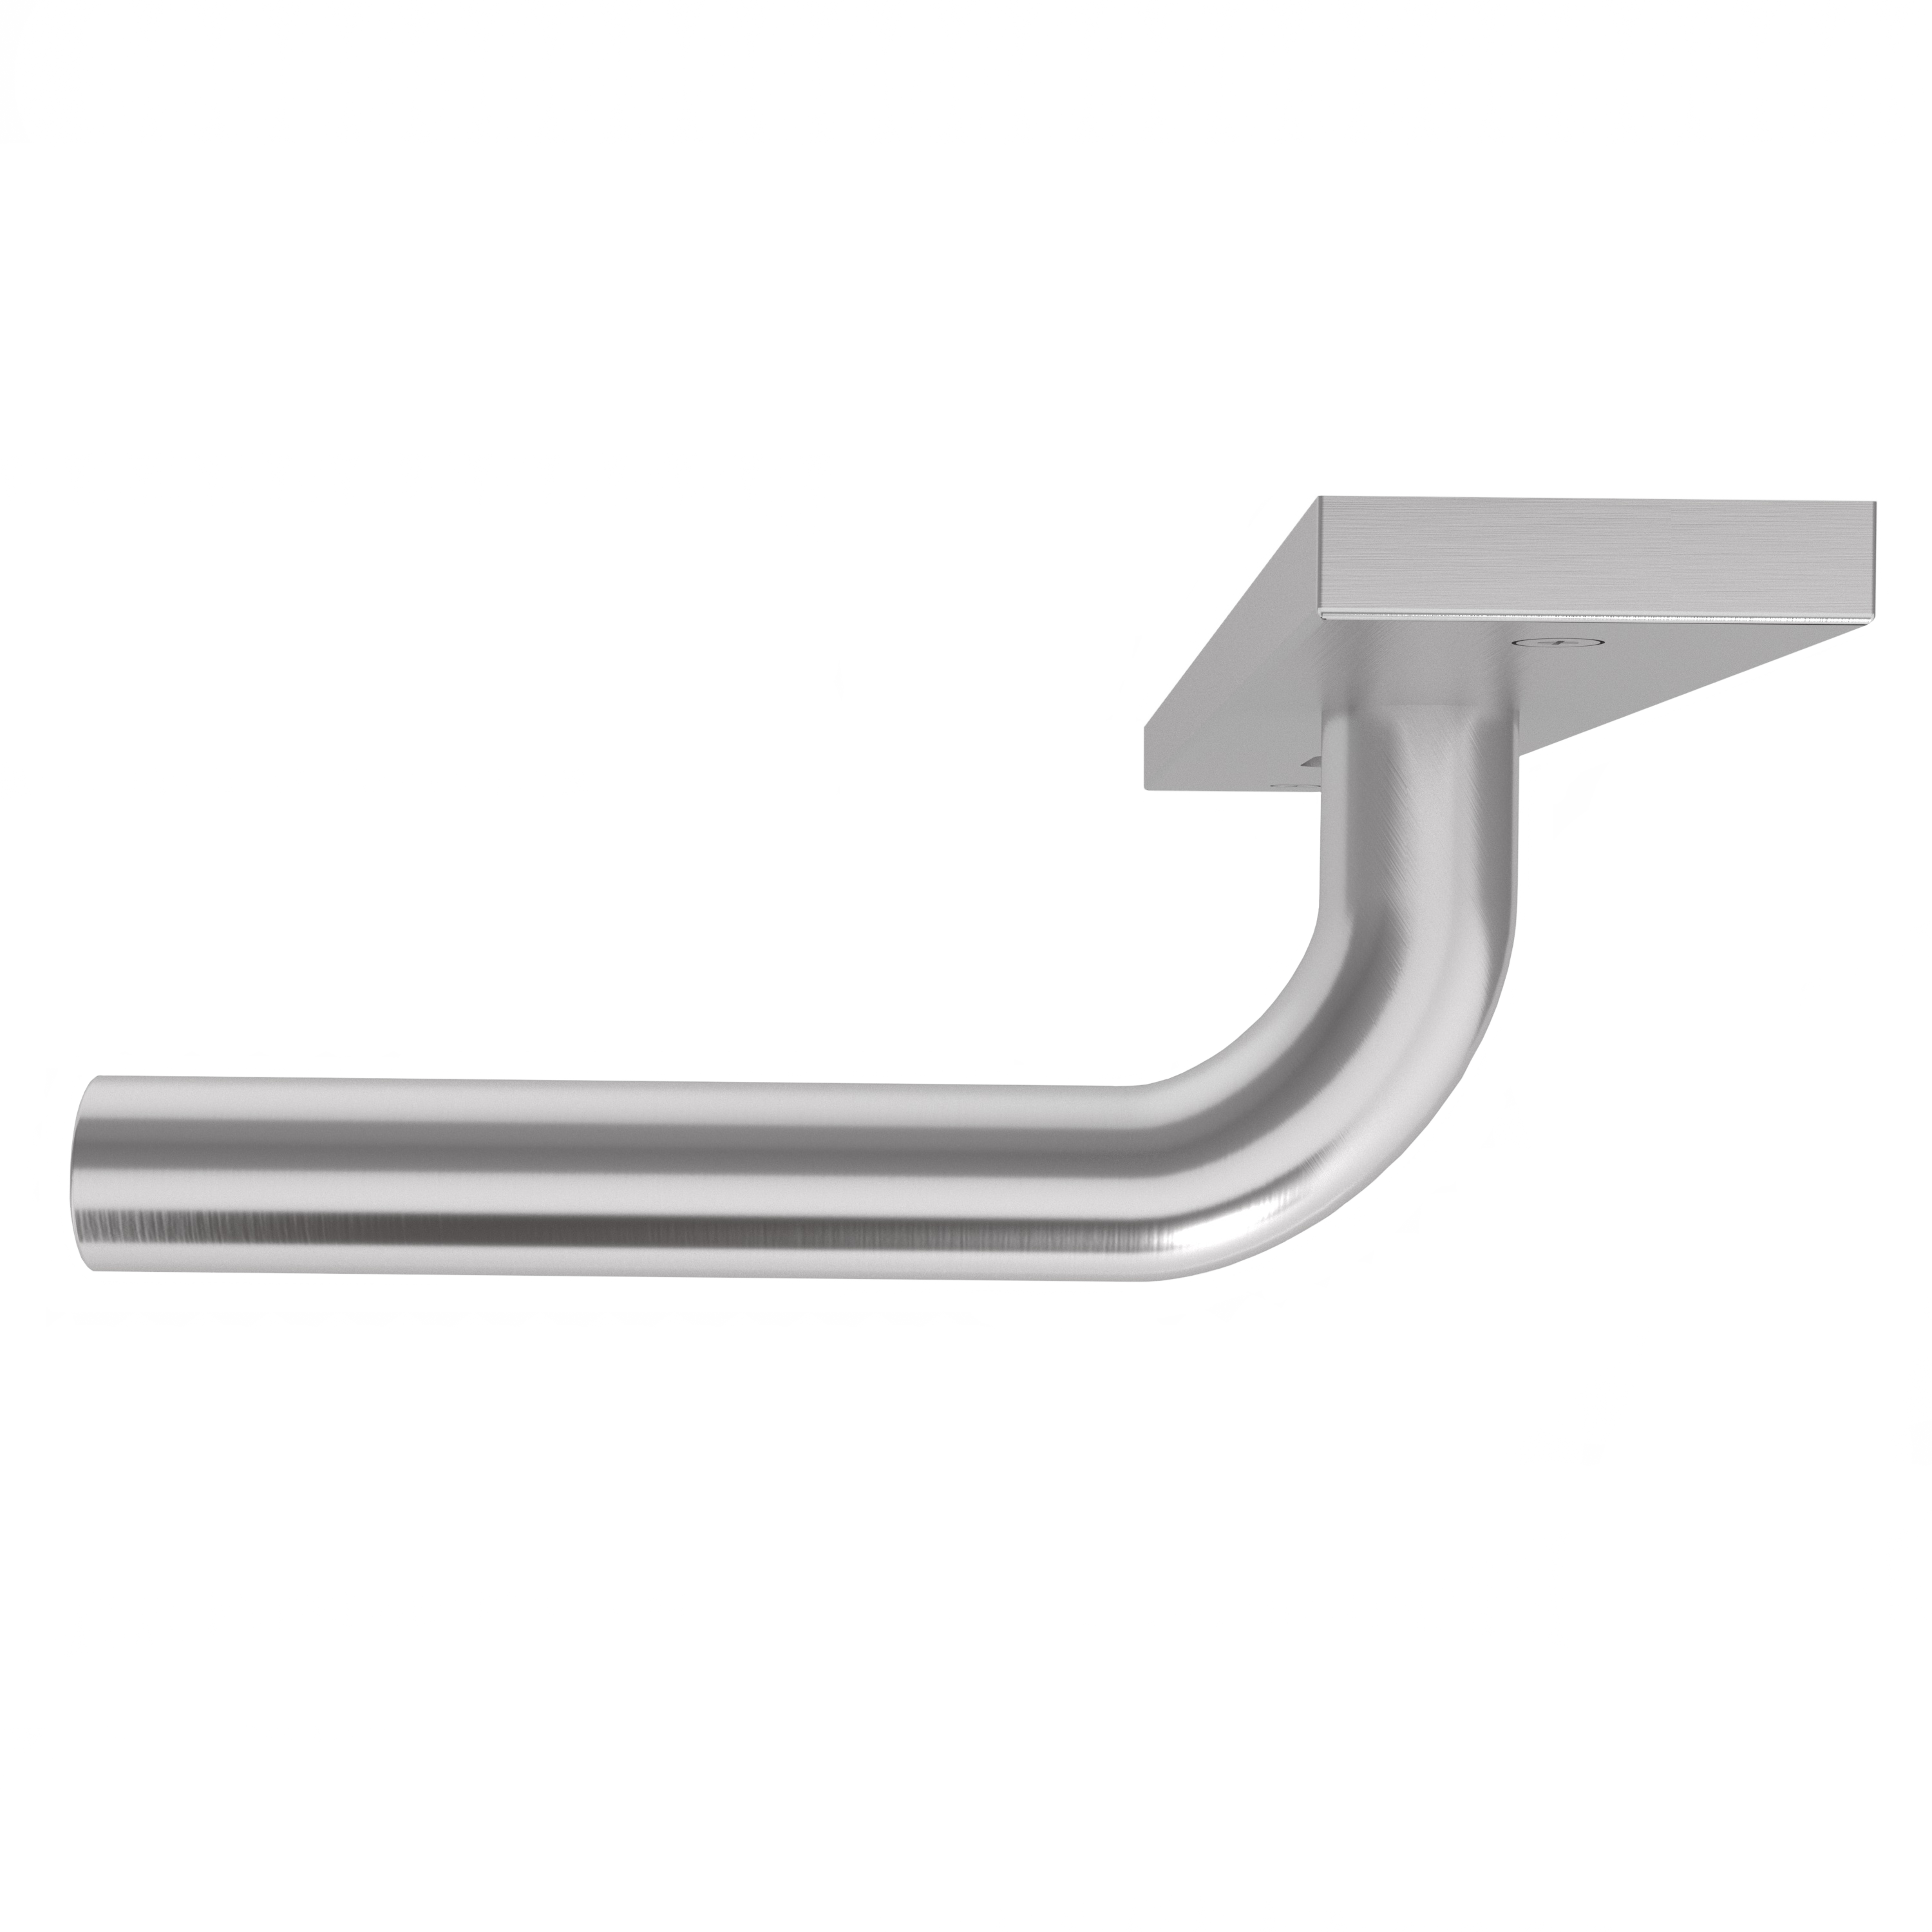 Langschildgarnitur eckig L- Form gerade Modell Juvora Edelstahl geschraubt Klasse 1